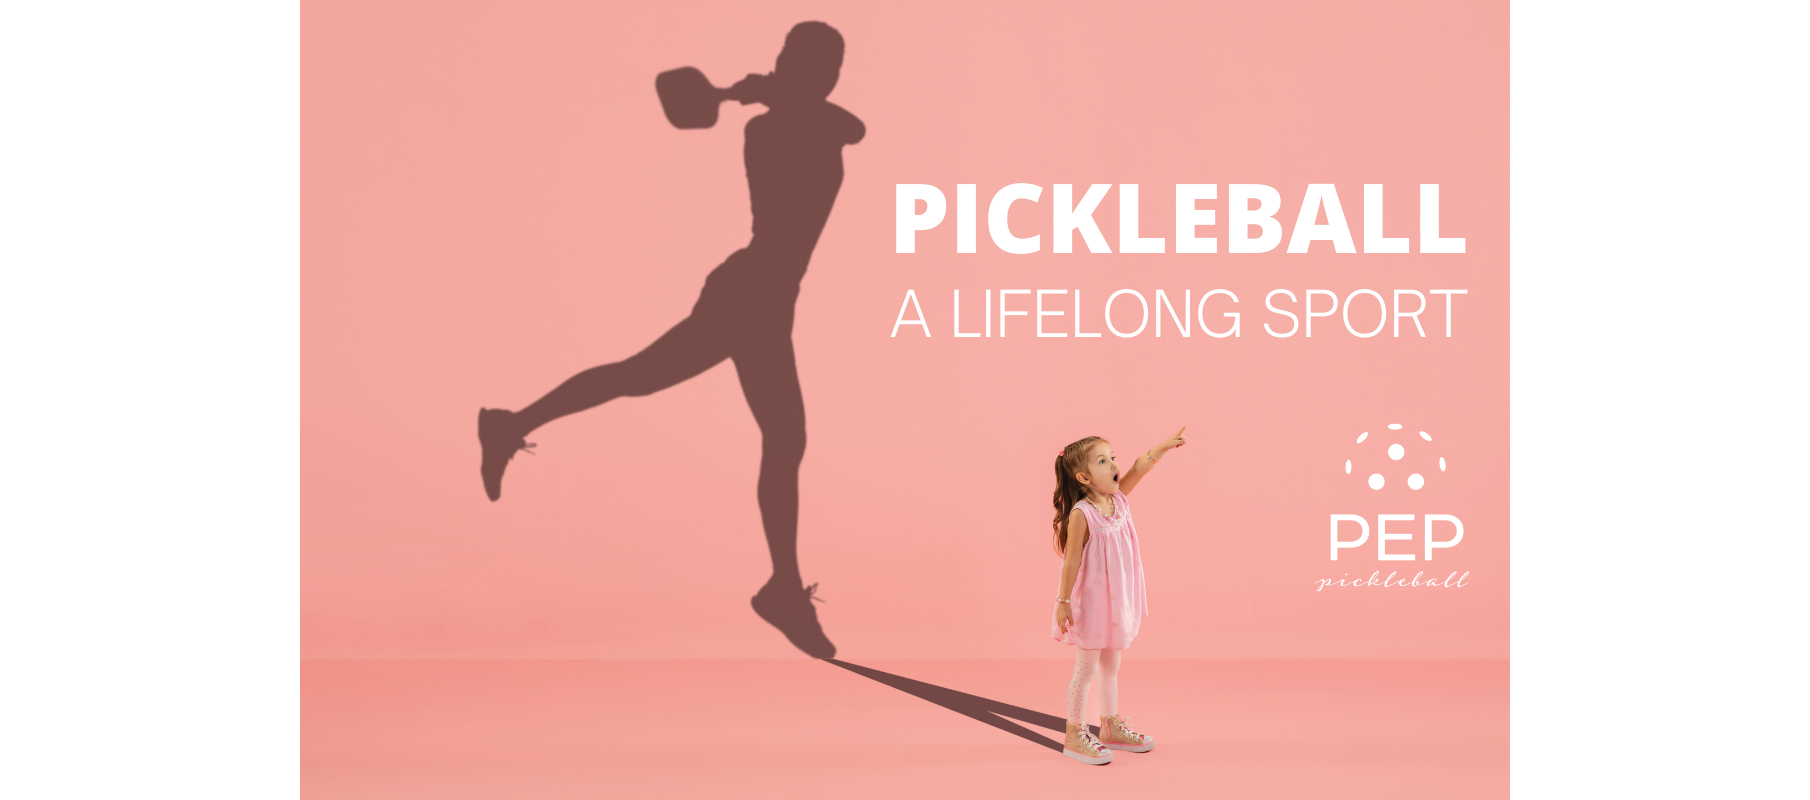 Pickleball for women and girls